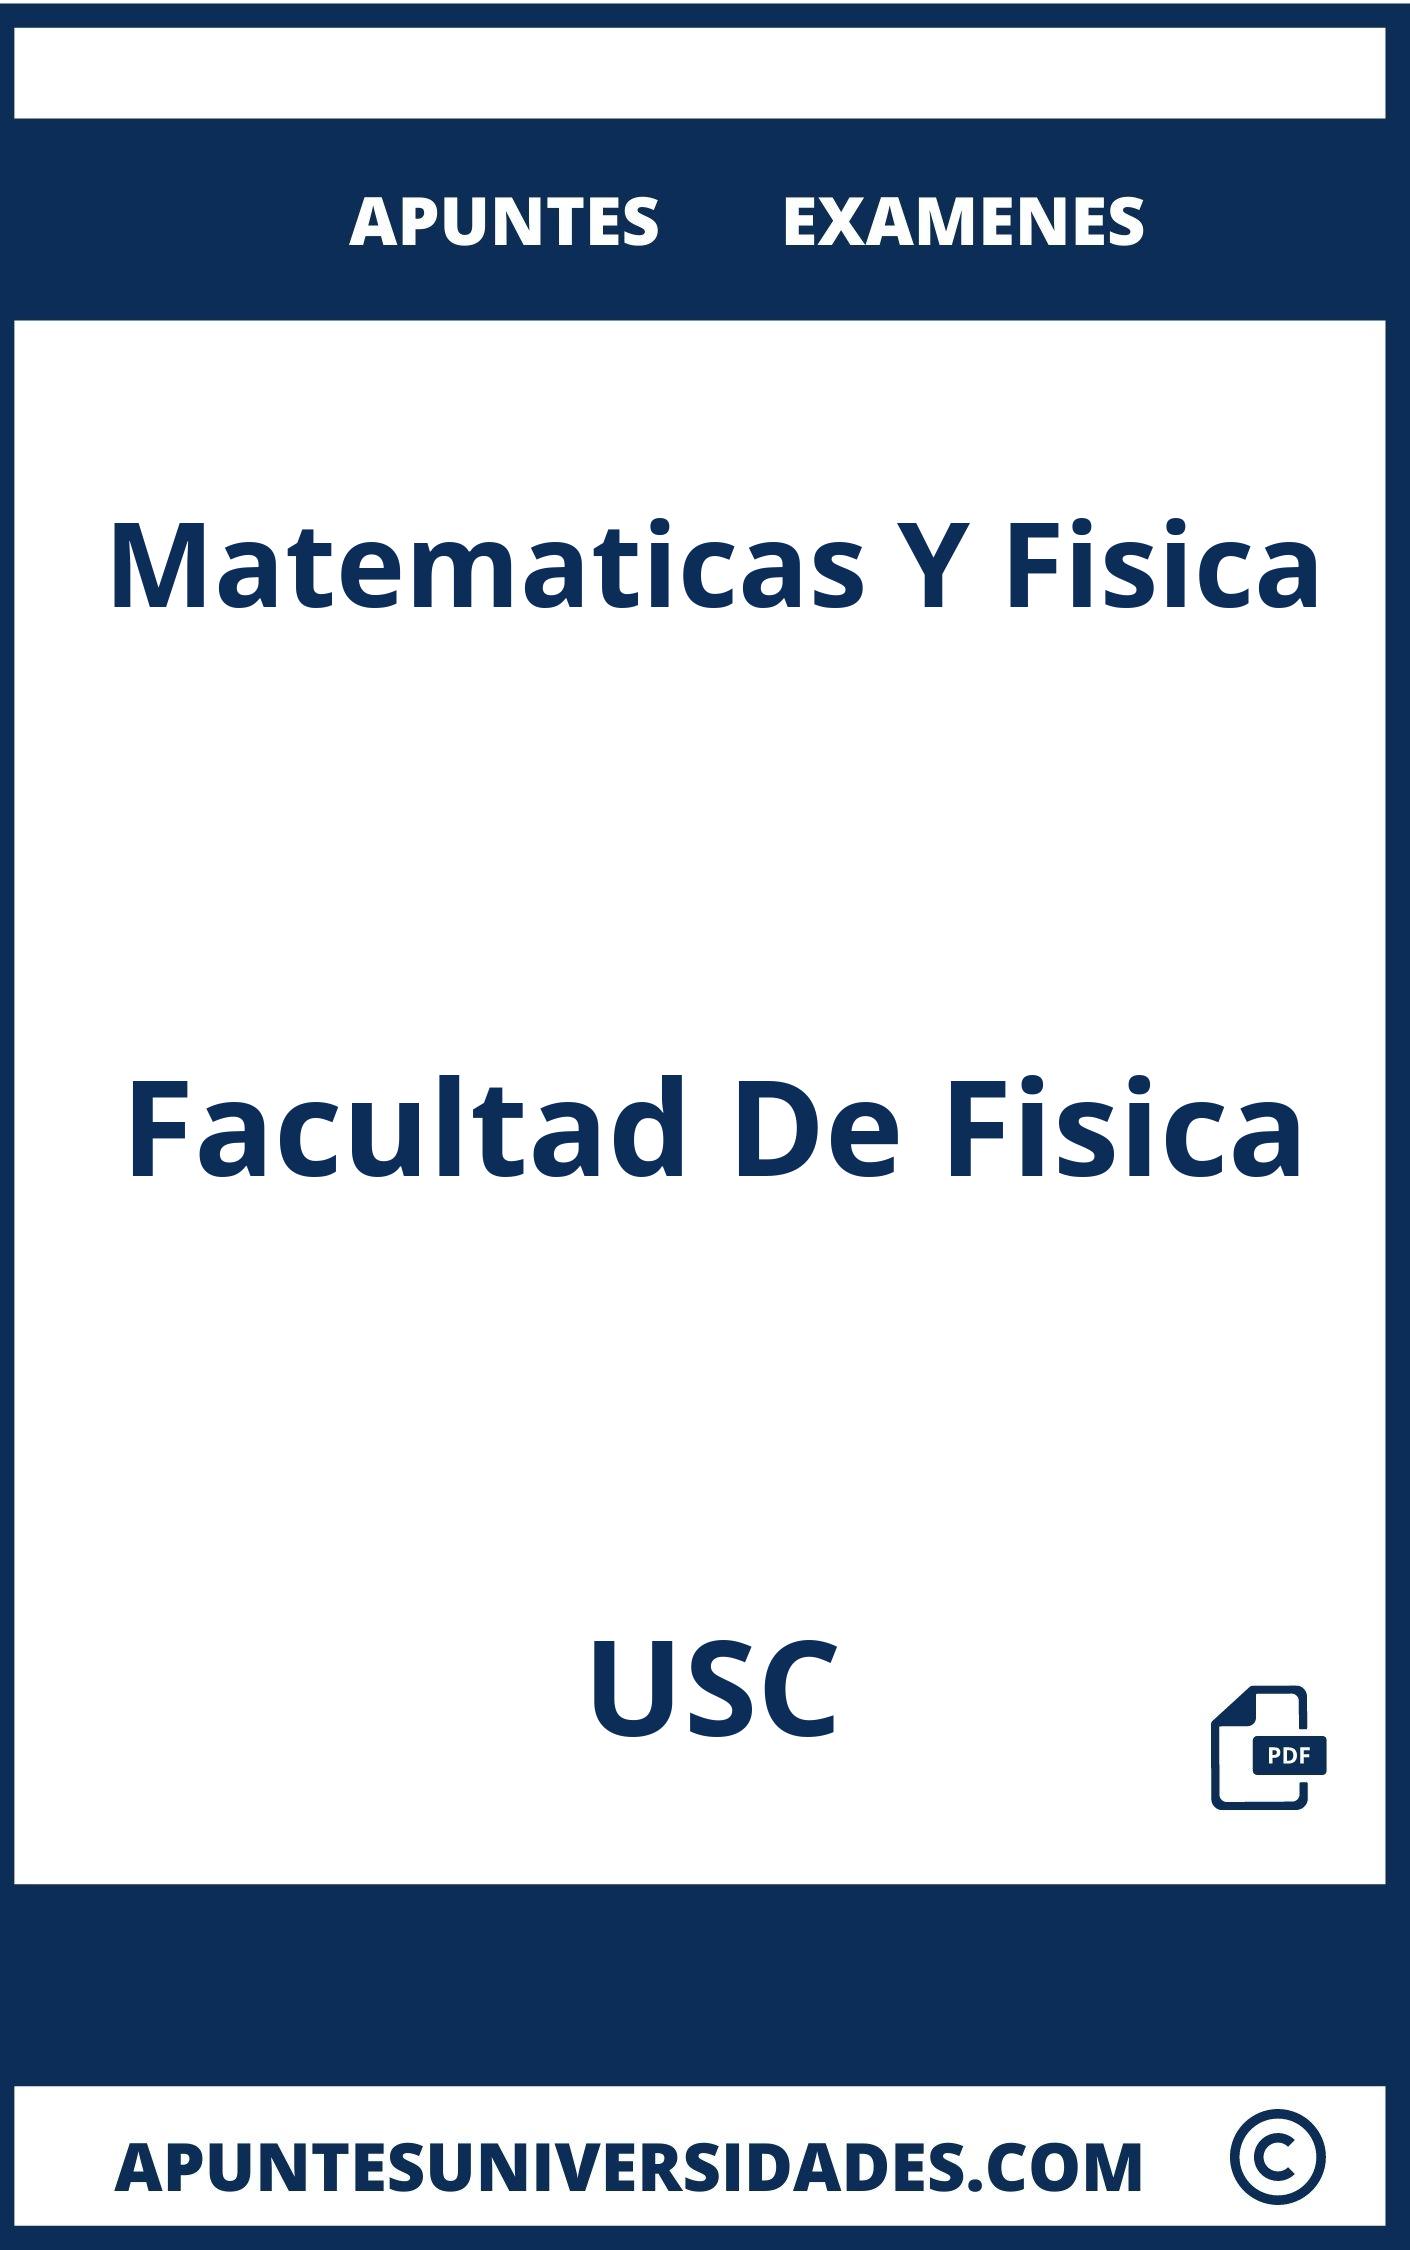 Apuntes y Examenes Matematicas Y Fisica USC